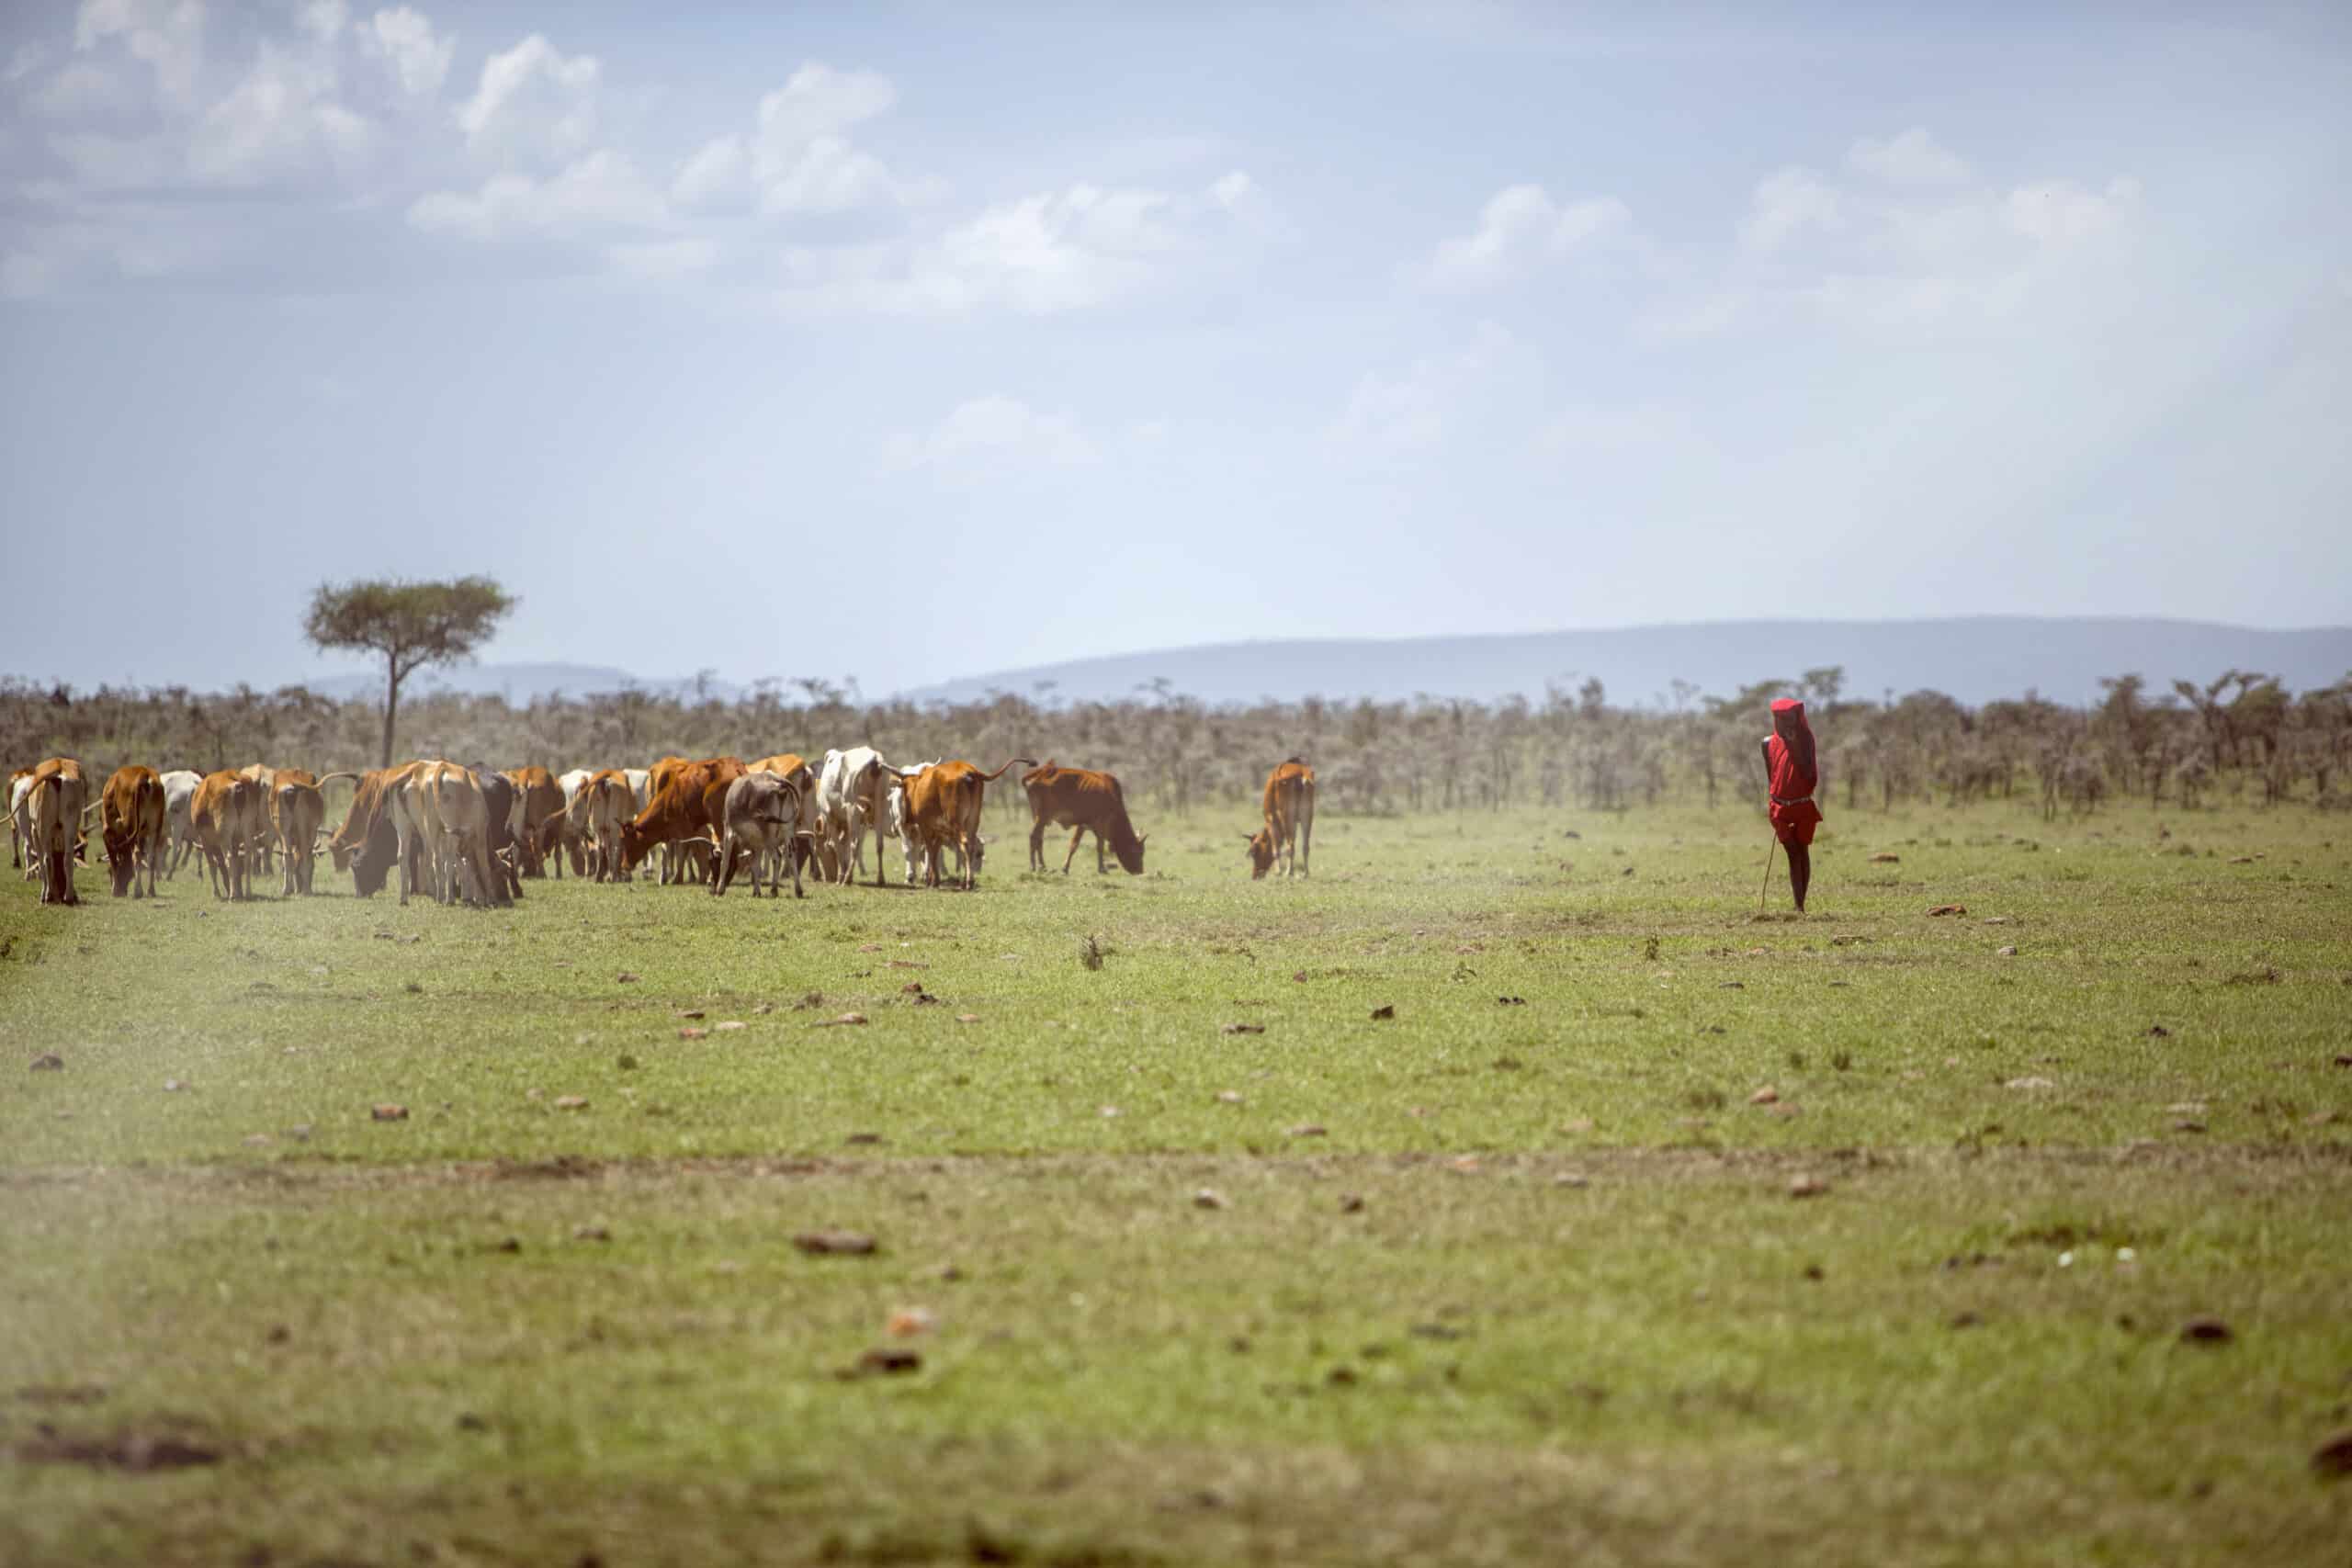 Eine Person in traditioneller roter Kleidung steht in einer grasbewachsenen Savanne und hütet eine große Herde Vieh unter einem weiten, wolkenverhangenen Himmel. © Fotografie Tomas Rodriguez